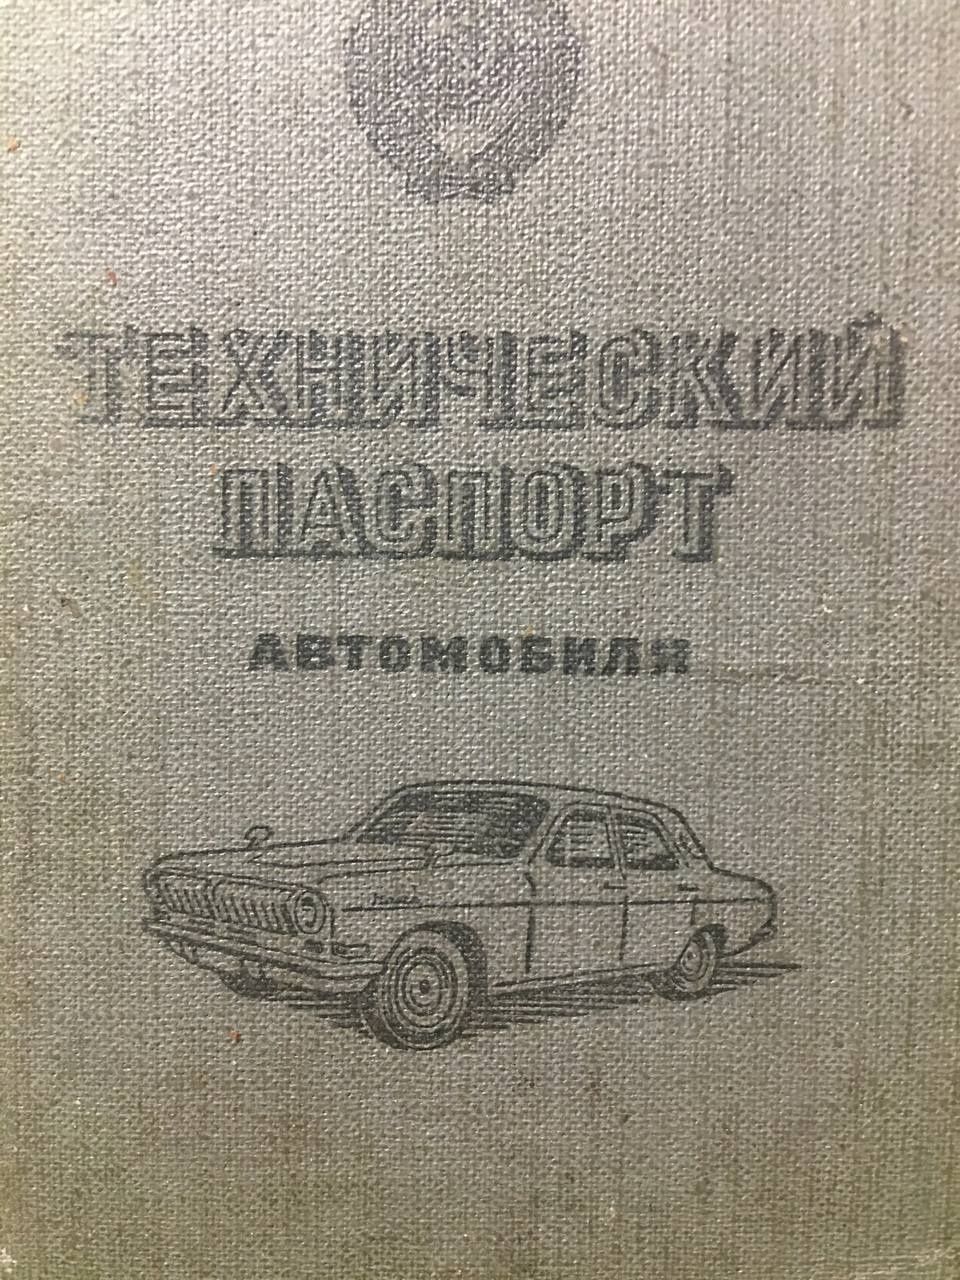 Продам Волгу ГАЗ 21 1963 года